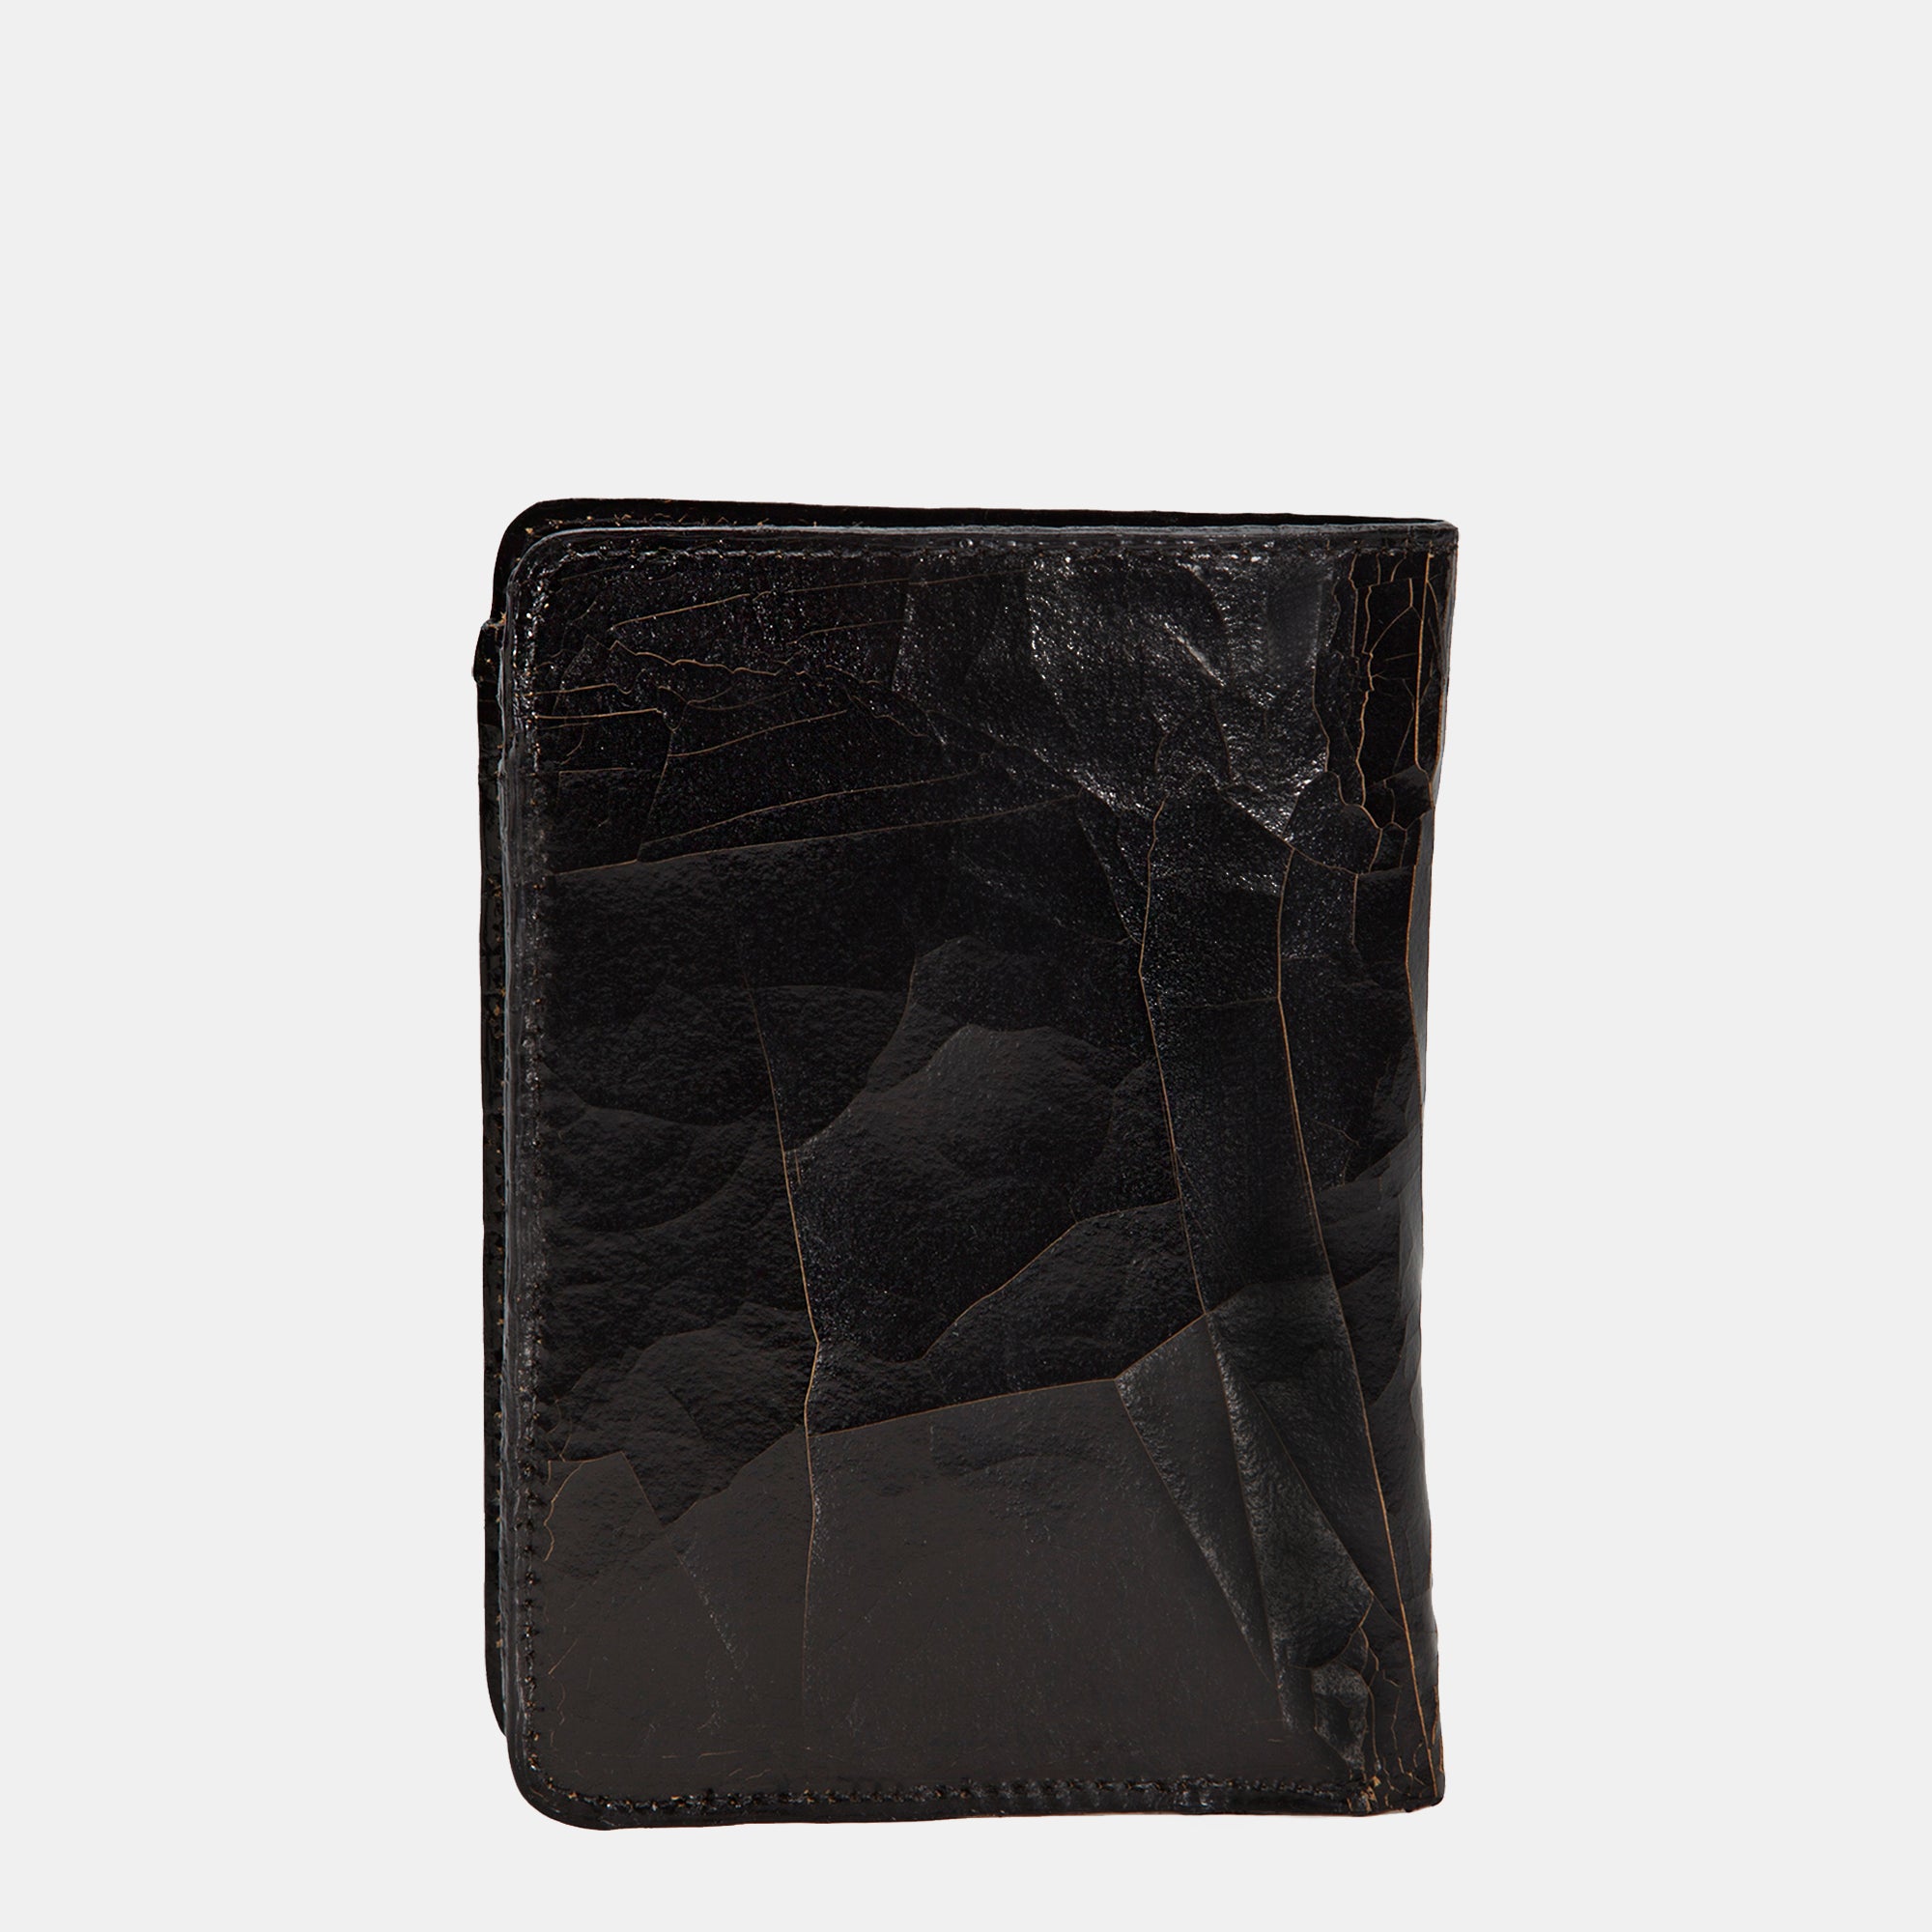 Luxury leather sustainable silk passport holder wallet